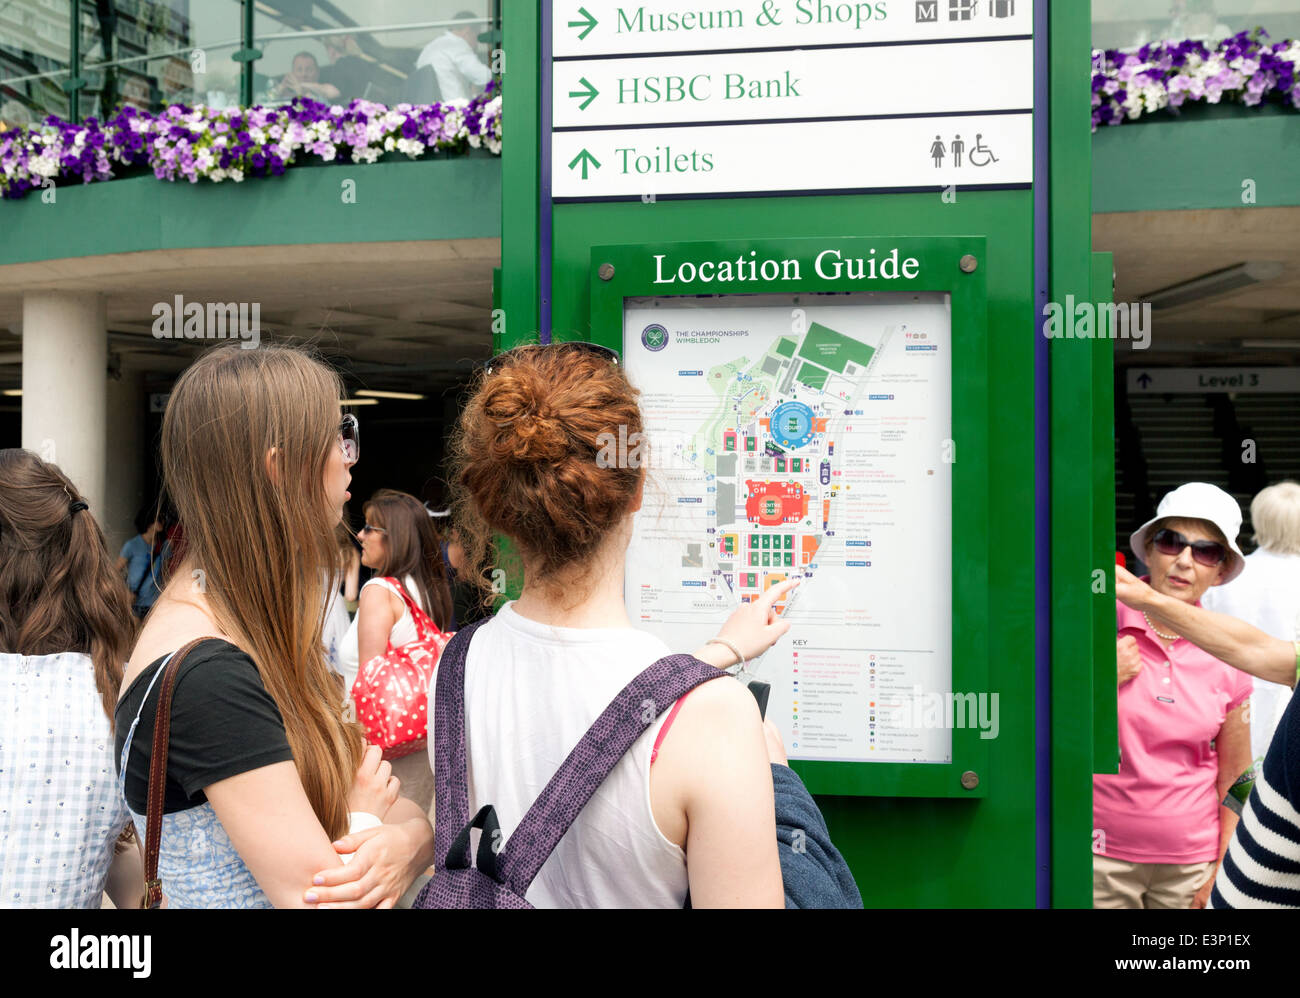 Las personas mirando un mapa de ubicación, Wimbledon Lawn Tennis Club de Londres, Inglaterra, Reino Unido Foto de stock